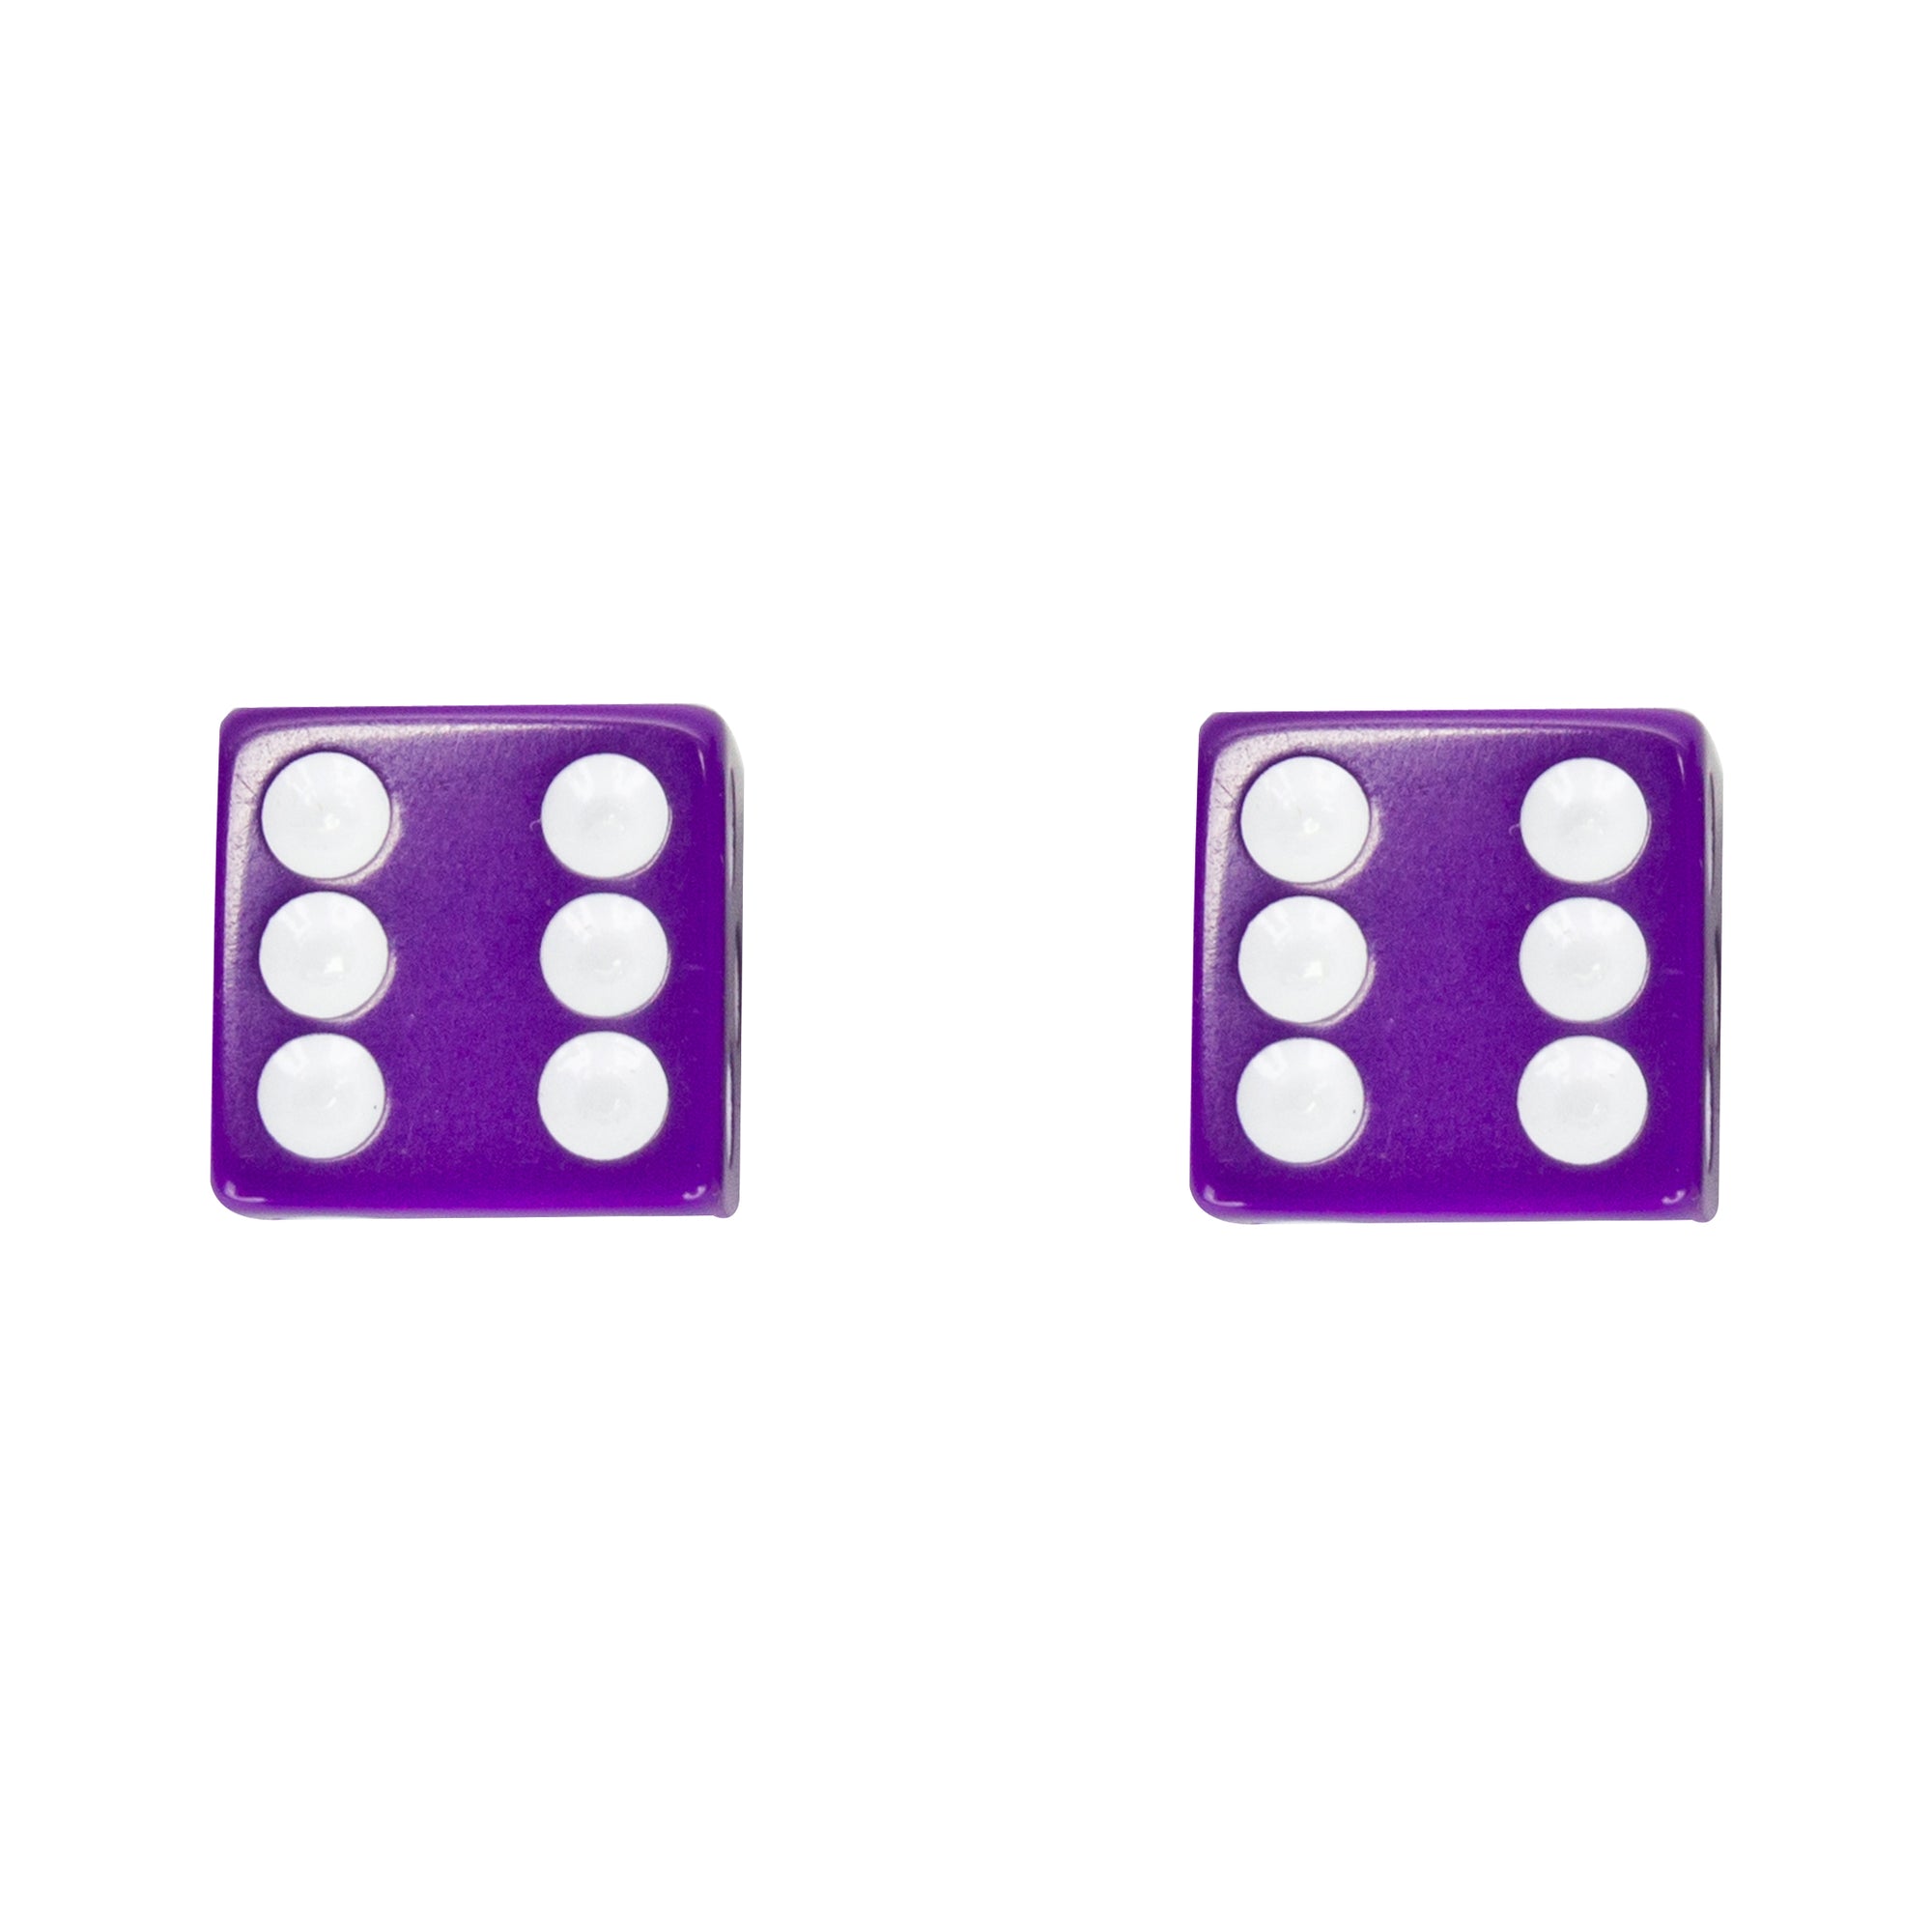 Trik Topz Dice Valve Caps -  Pair - Purple